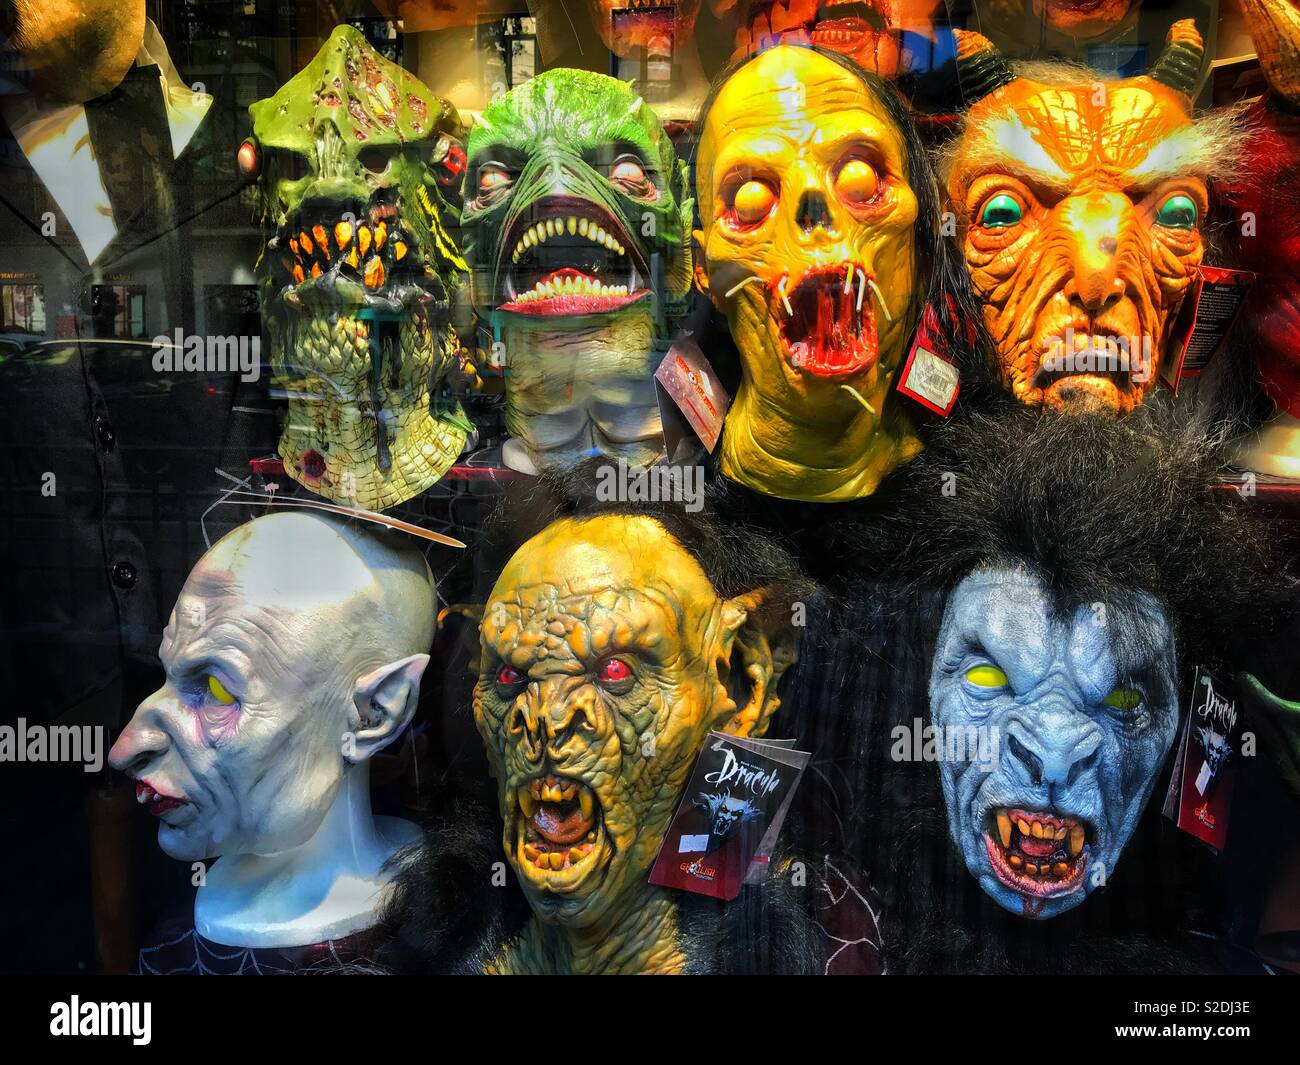 Gruselige Masken für den Verkauf in einem Schaufenster. Es ist Halloween  Zeit?! Foto - © COLIN HOSKINS Stockfotografie - Alamy